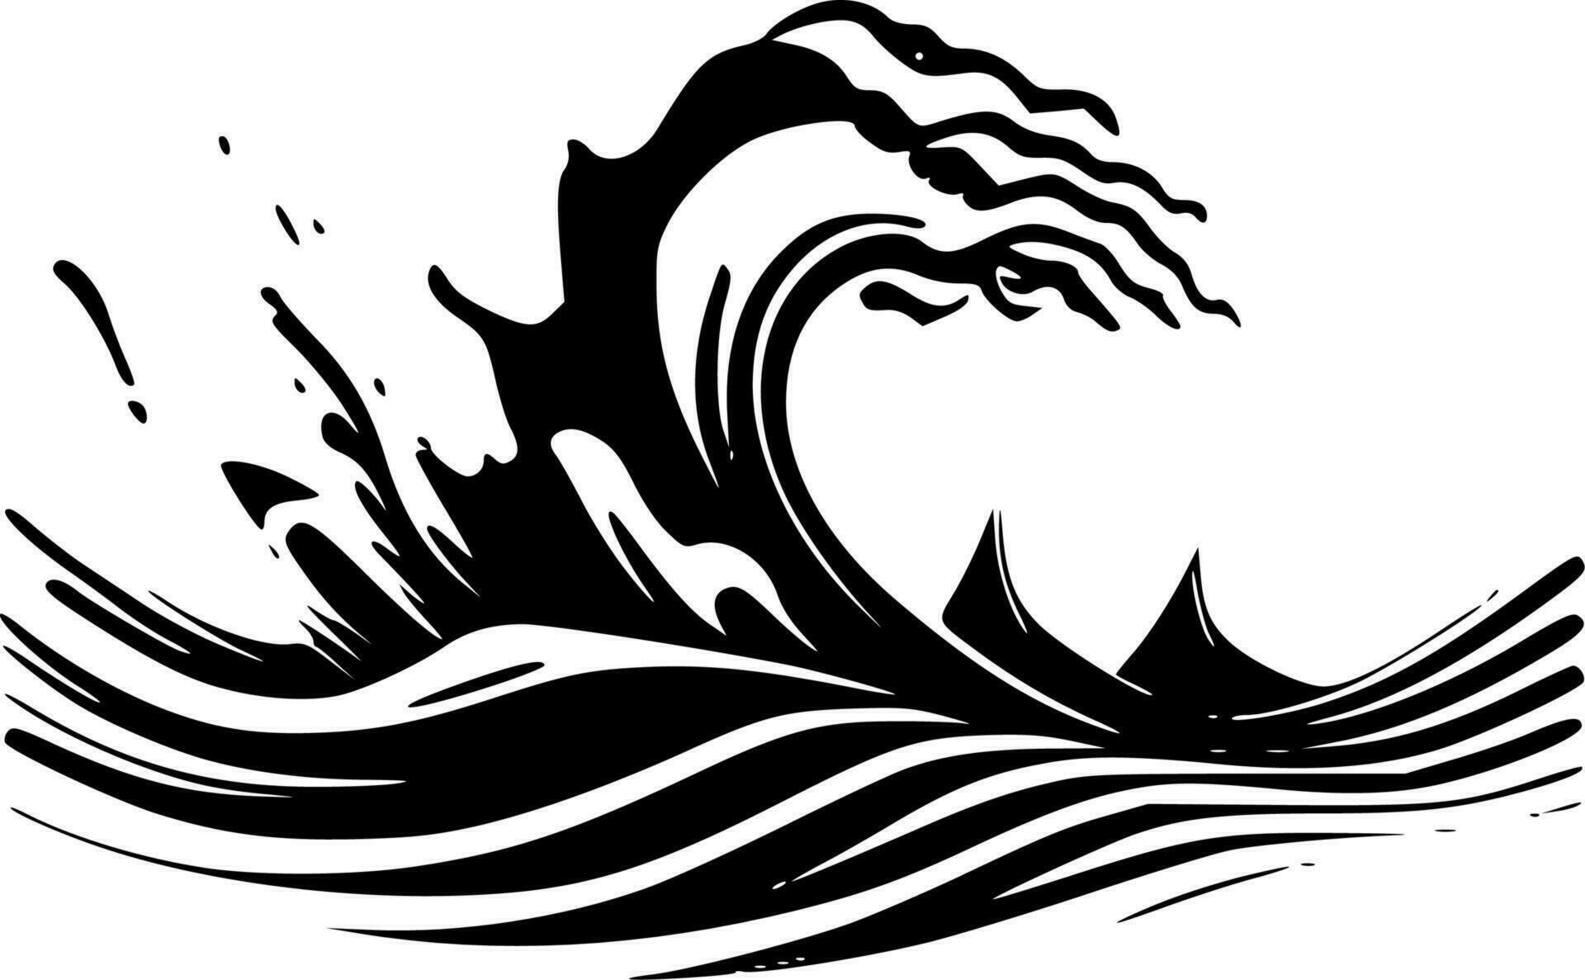 vågor, minimalistisk och enkel silhuett - vektor illustration